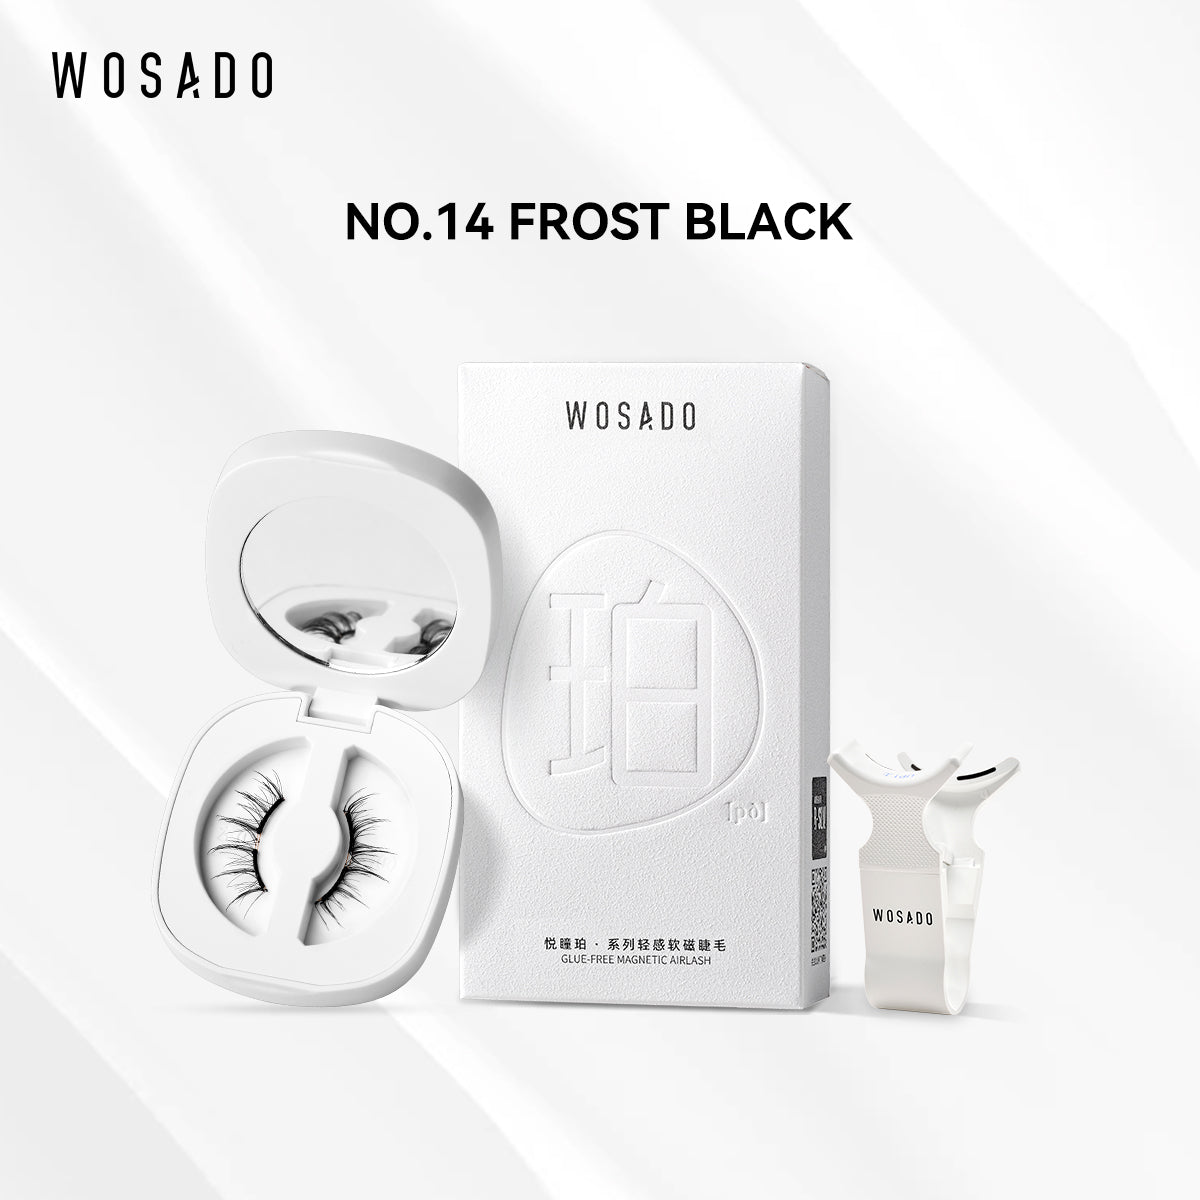 【WOSADO】NO.14 Frost Black